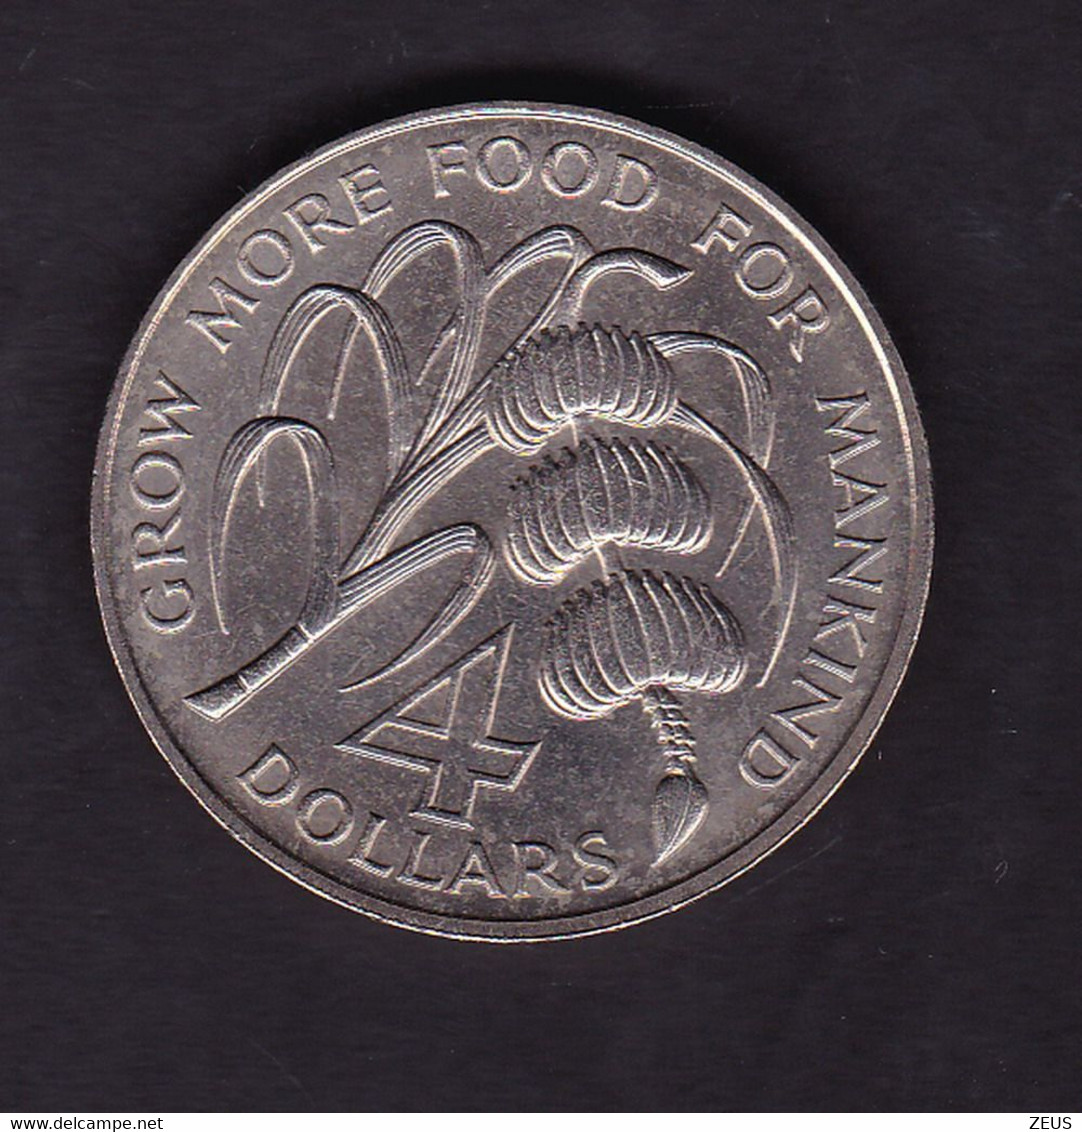 Saint Vincent: 4 DollarS 1970 " KM 13 F. A. O. " - Territoires Britanniques Des Caraïbes